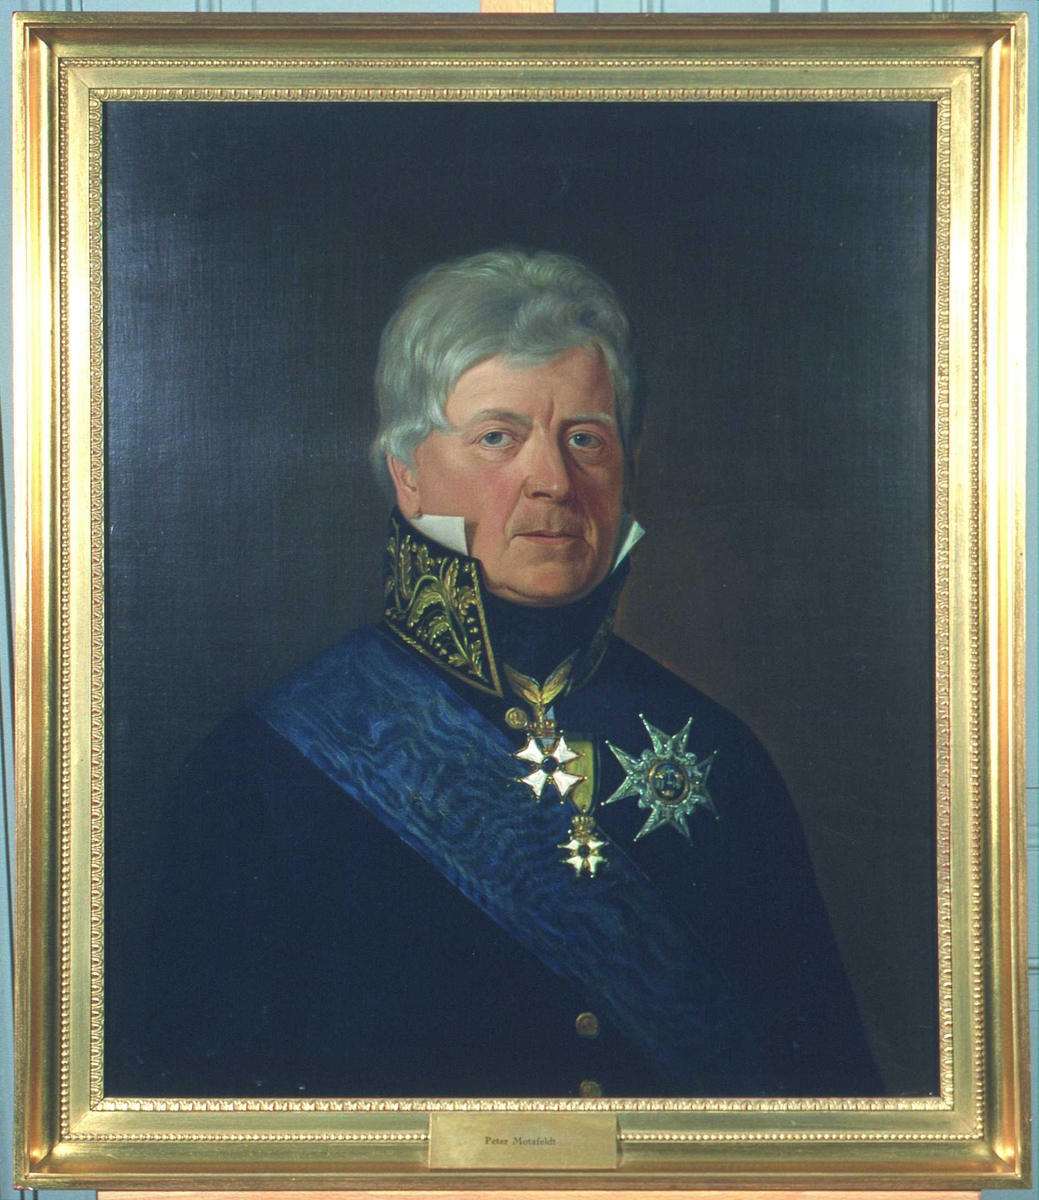 Portrett av Peter Motzfeldt.
Grått, kort hår.  Statsrådsuniform (etter 1815), høy krave m/gull, blått ordensbånd, 3 ordener.